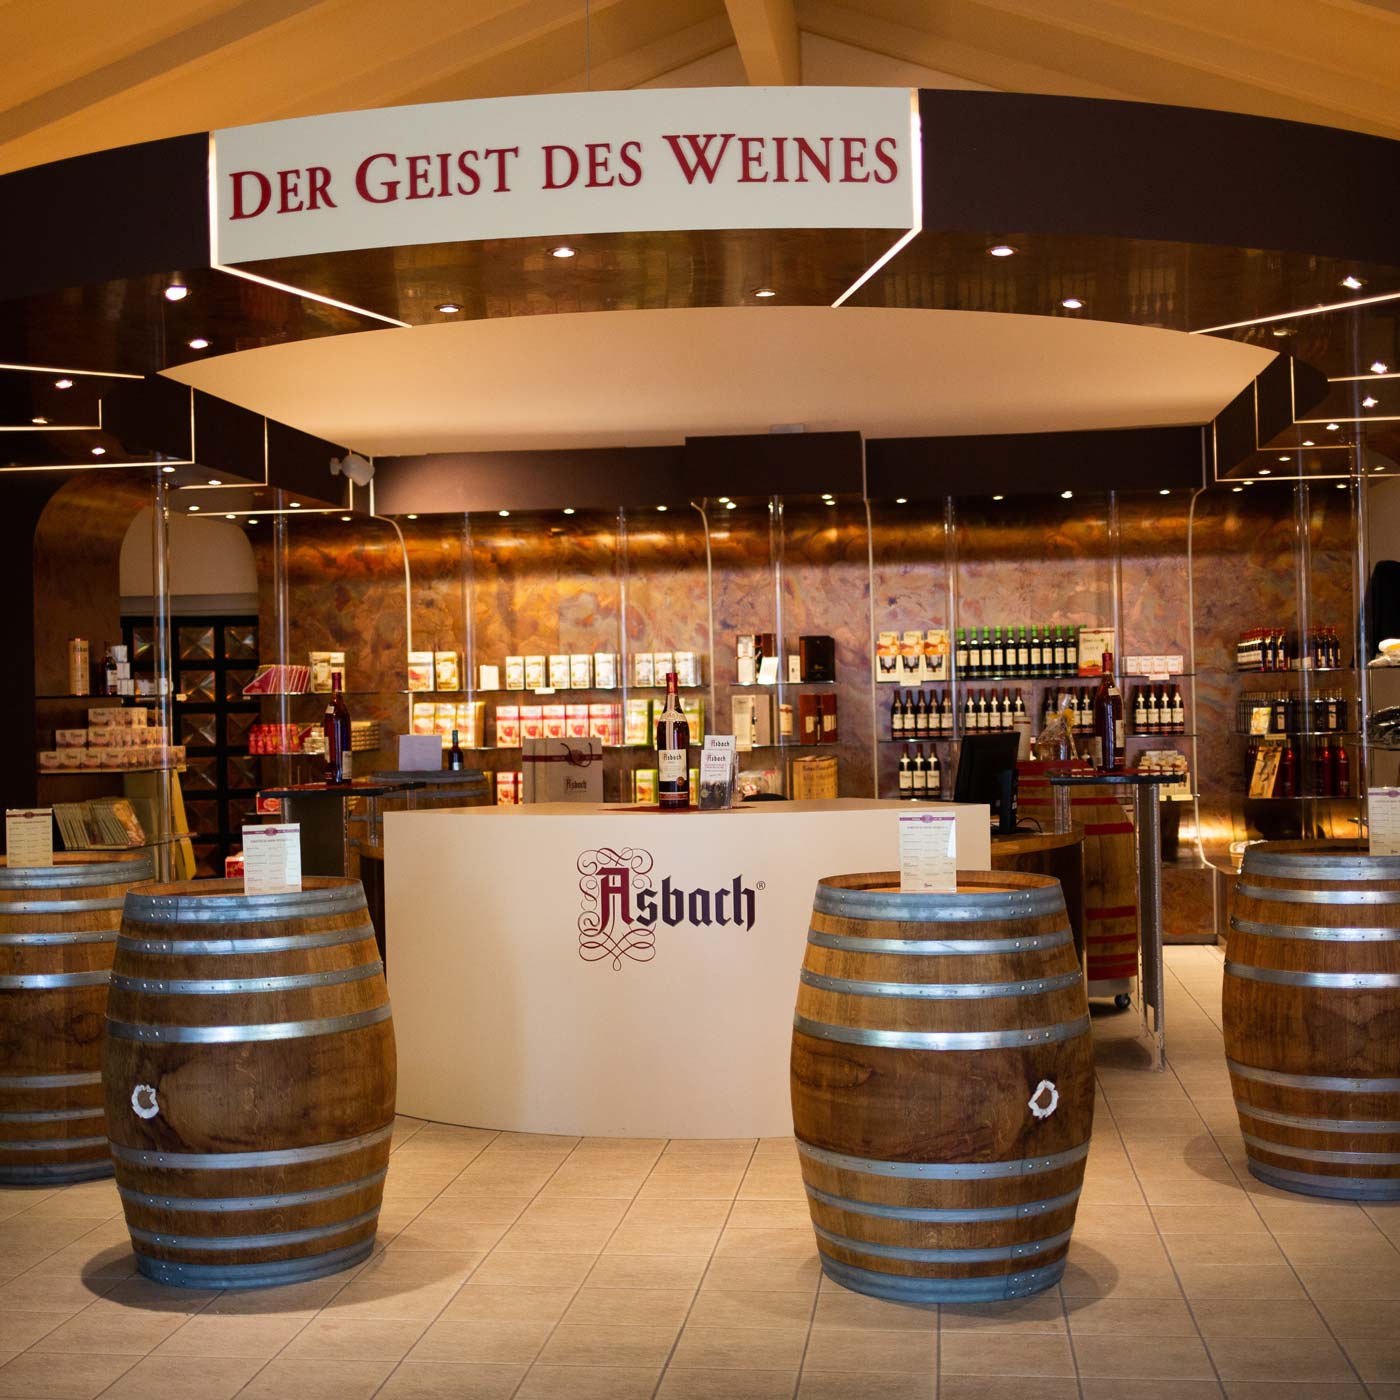 Asbach Besucher Center & Wein Destillerie